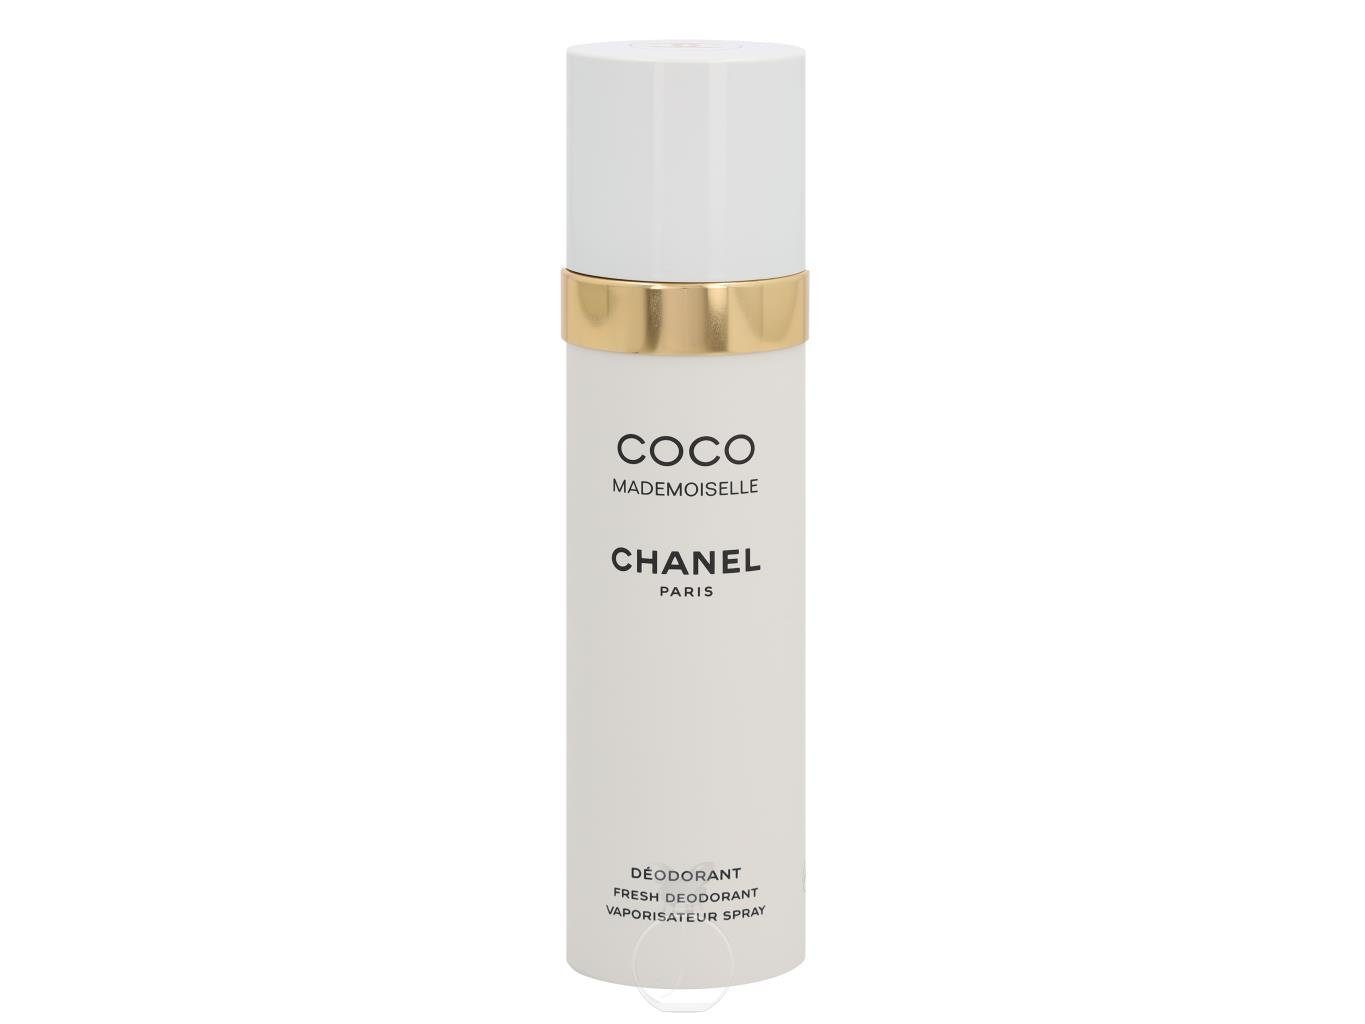 CHANEL Mademoiselle Körperpflegeduft 100 Chanel ml Deodorant Coco